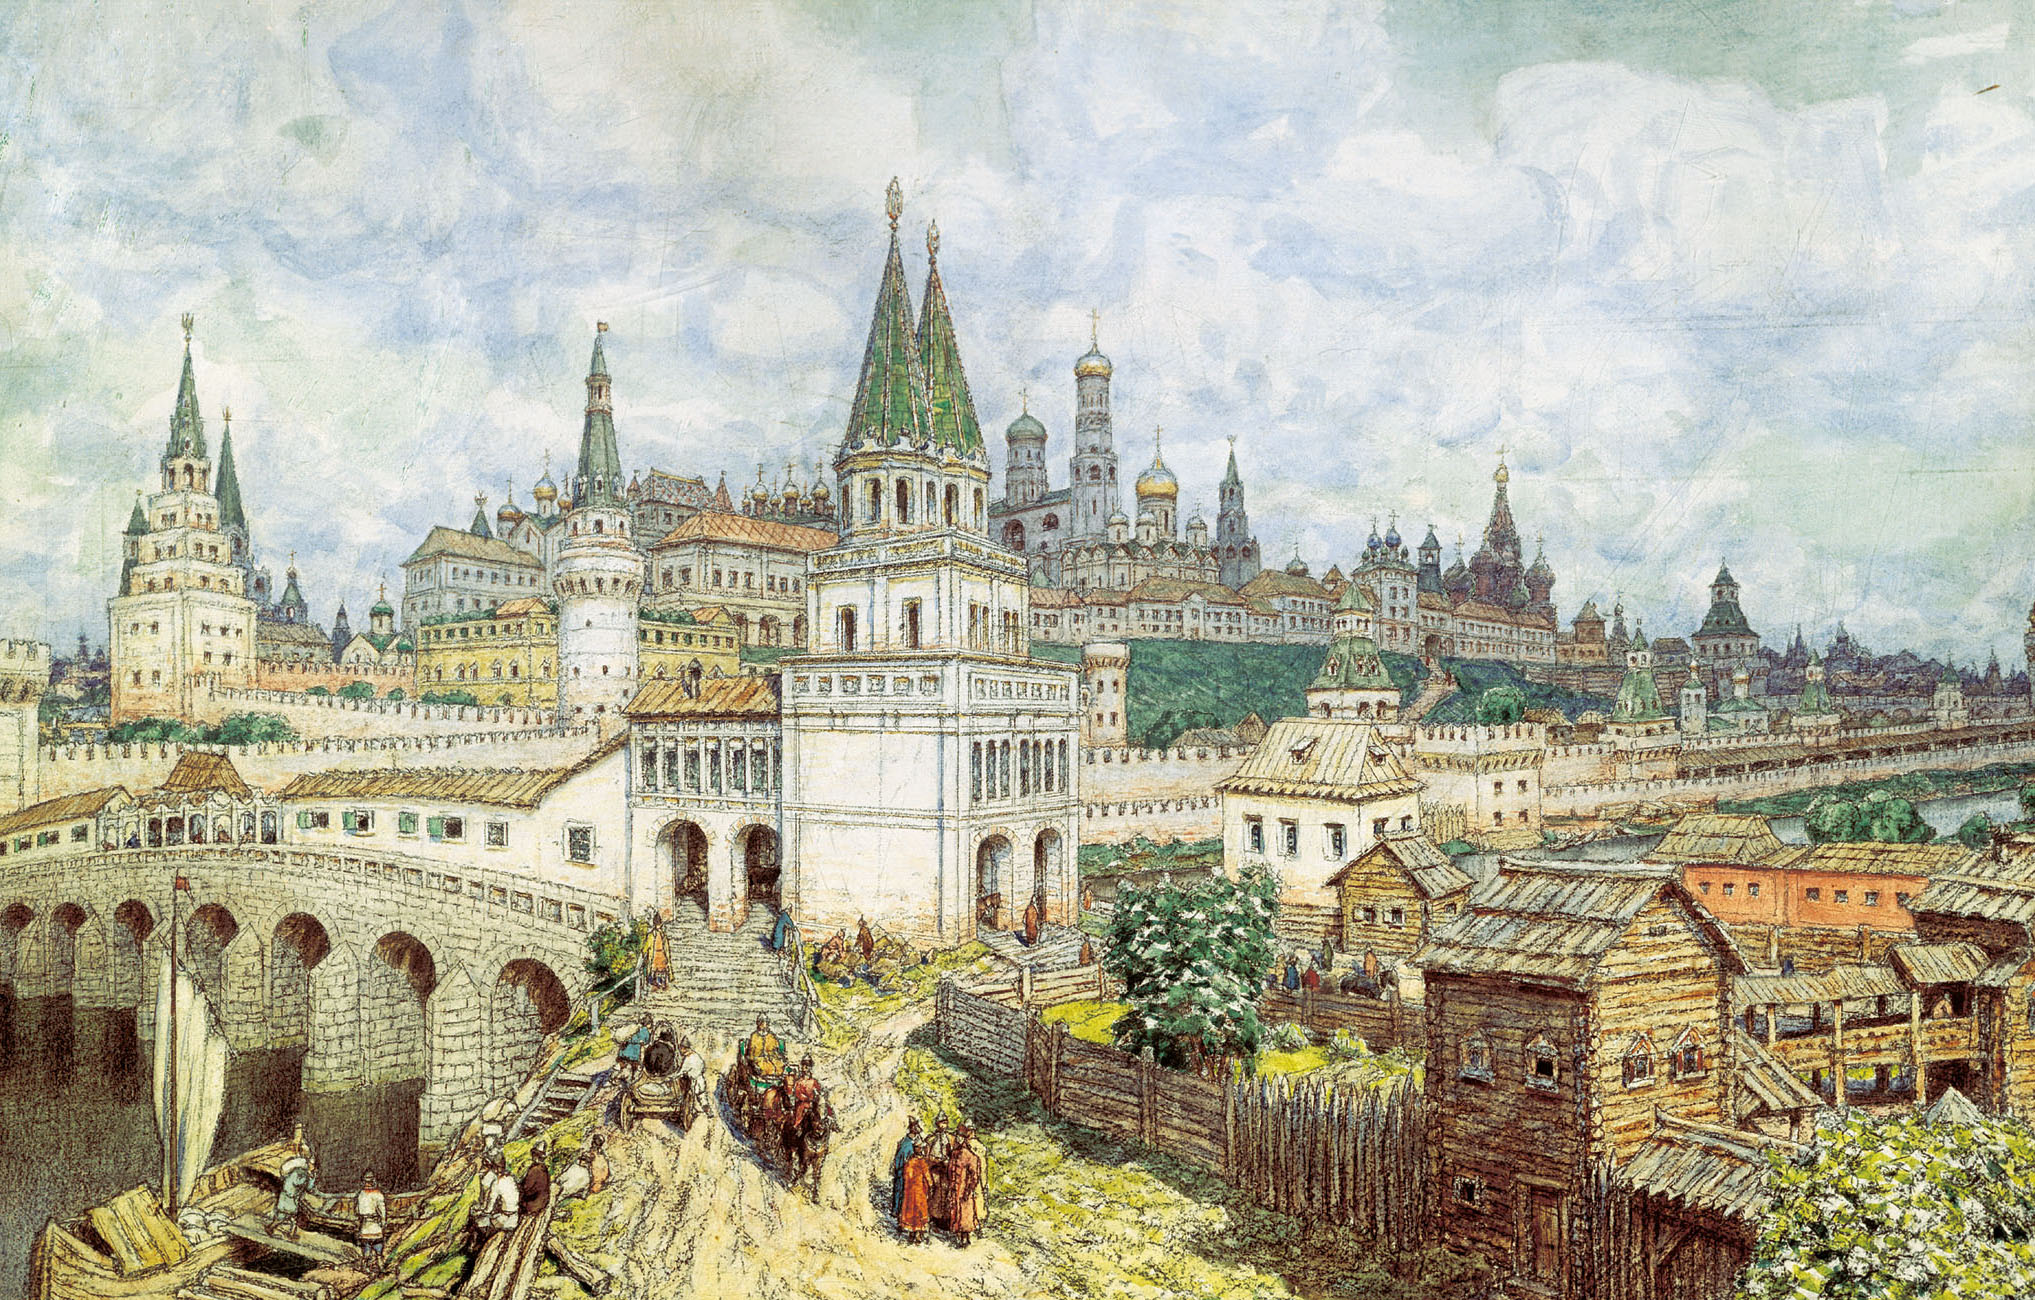 строительство каменного кремля в москве при князе